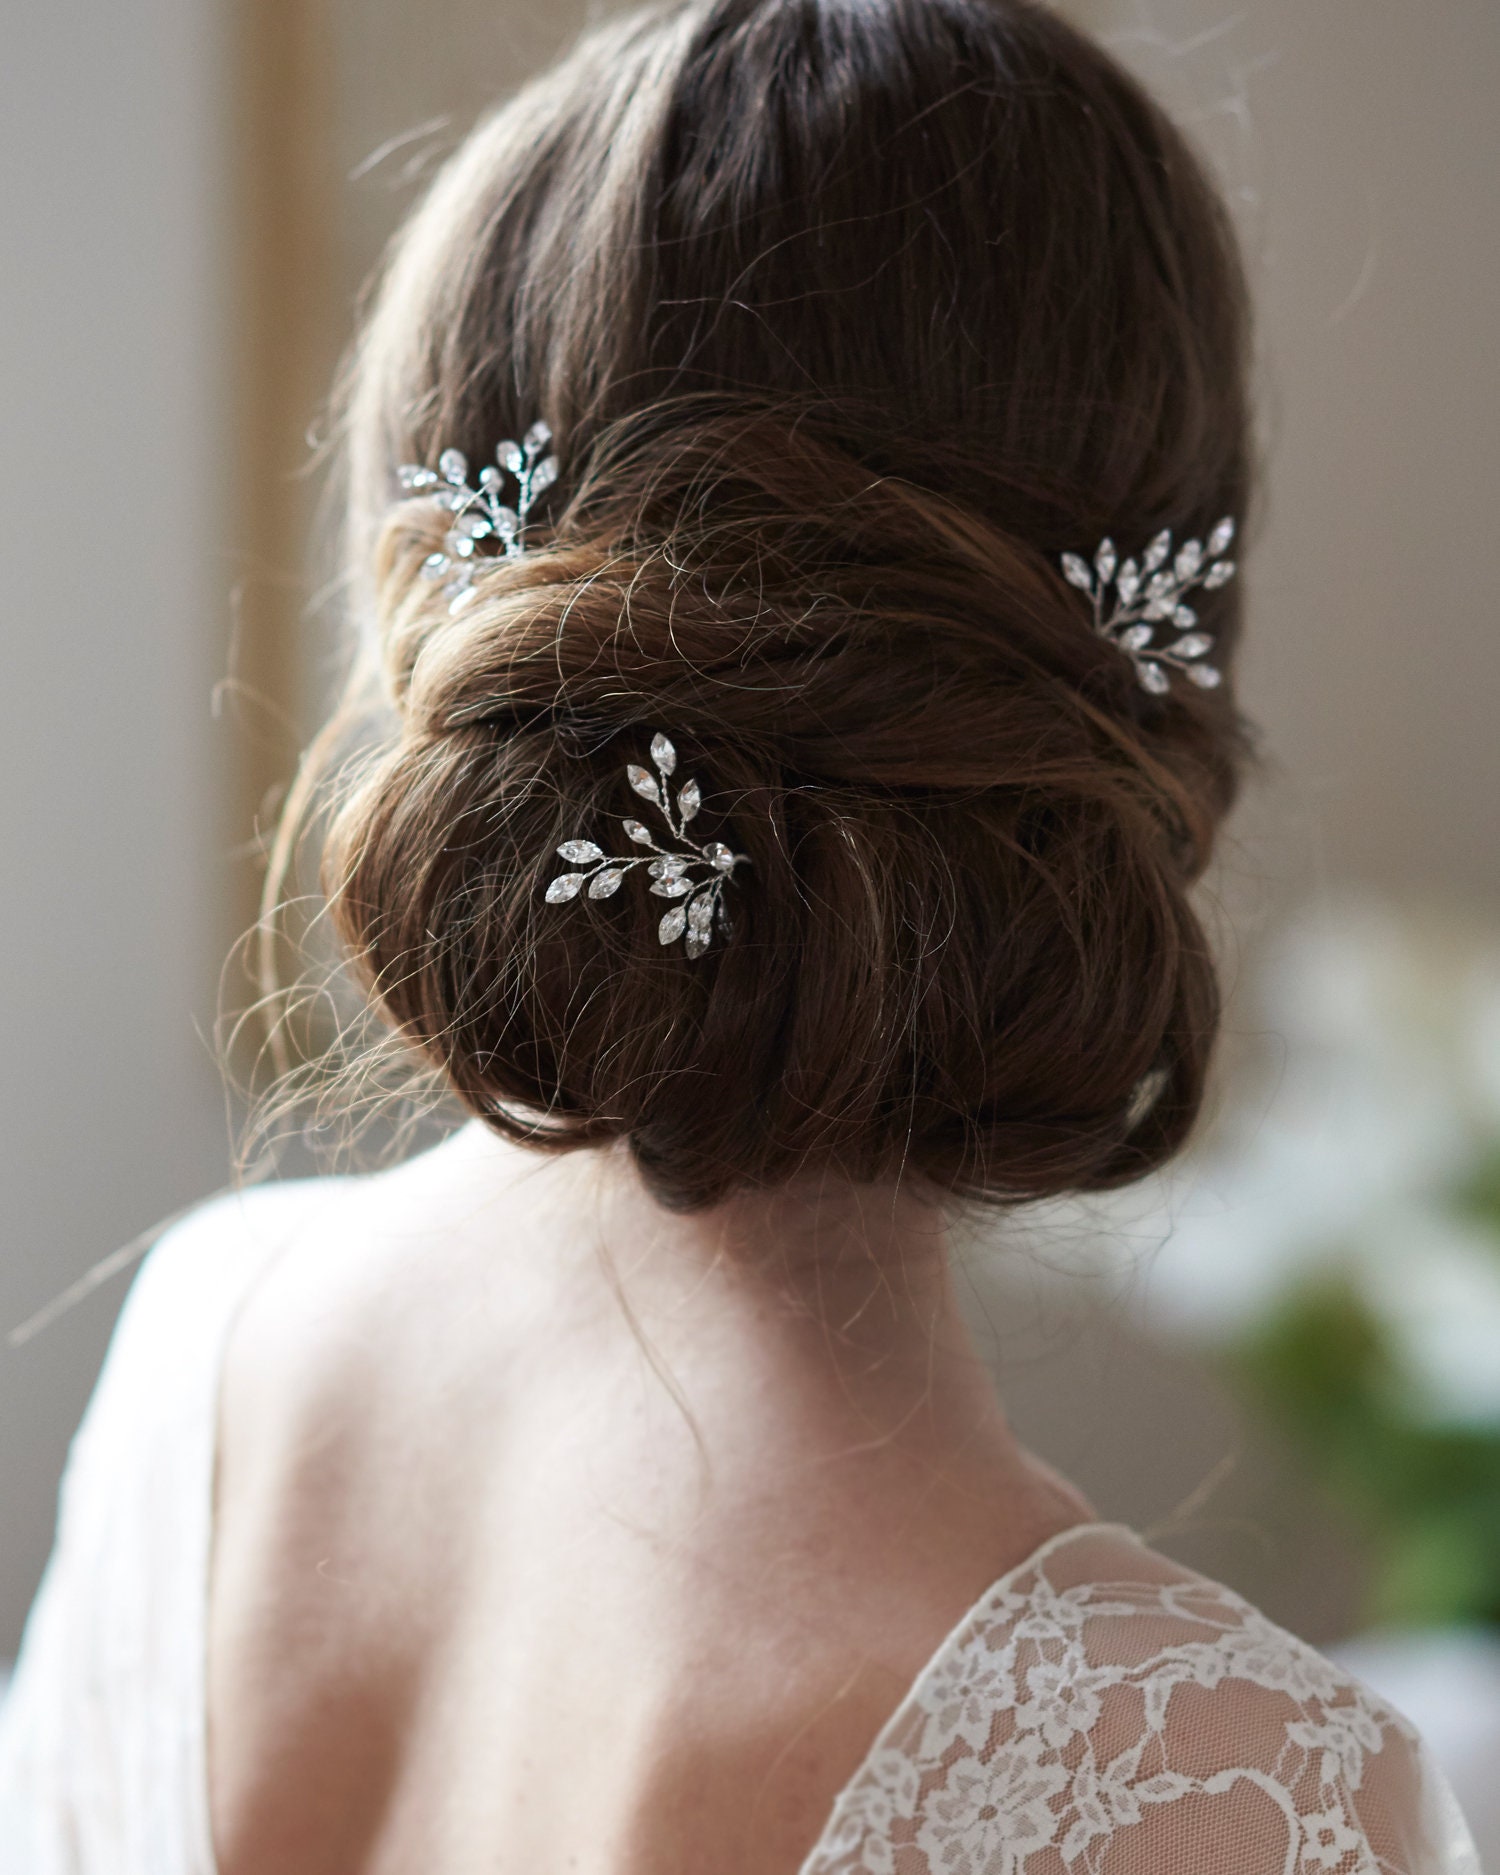 NEW Rhinestone Crystal Clip Hair Claw Hairpin Wedding Bridal Elegant Silver USA 